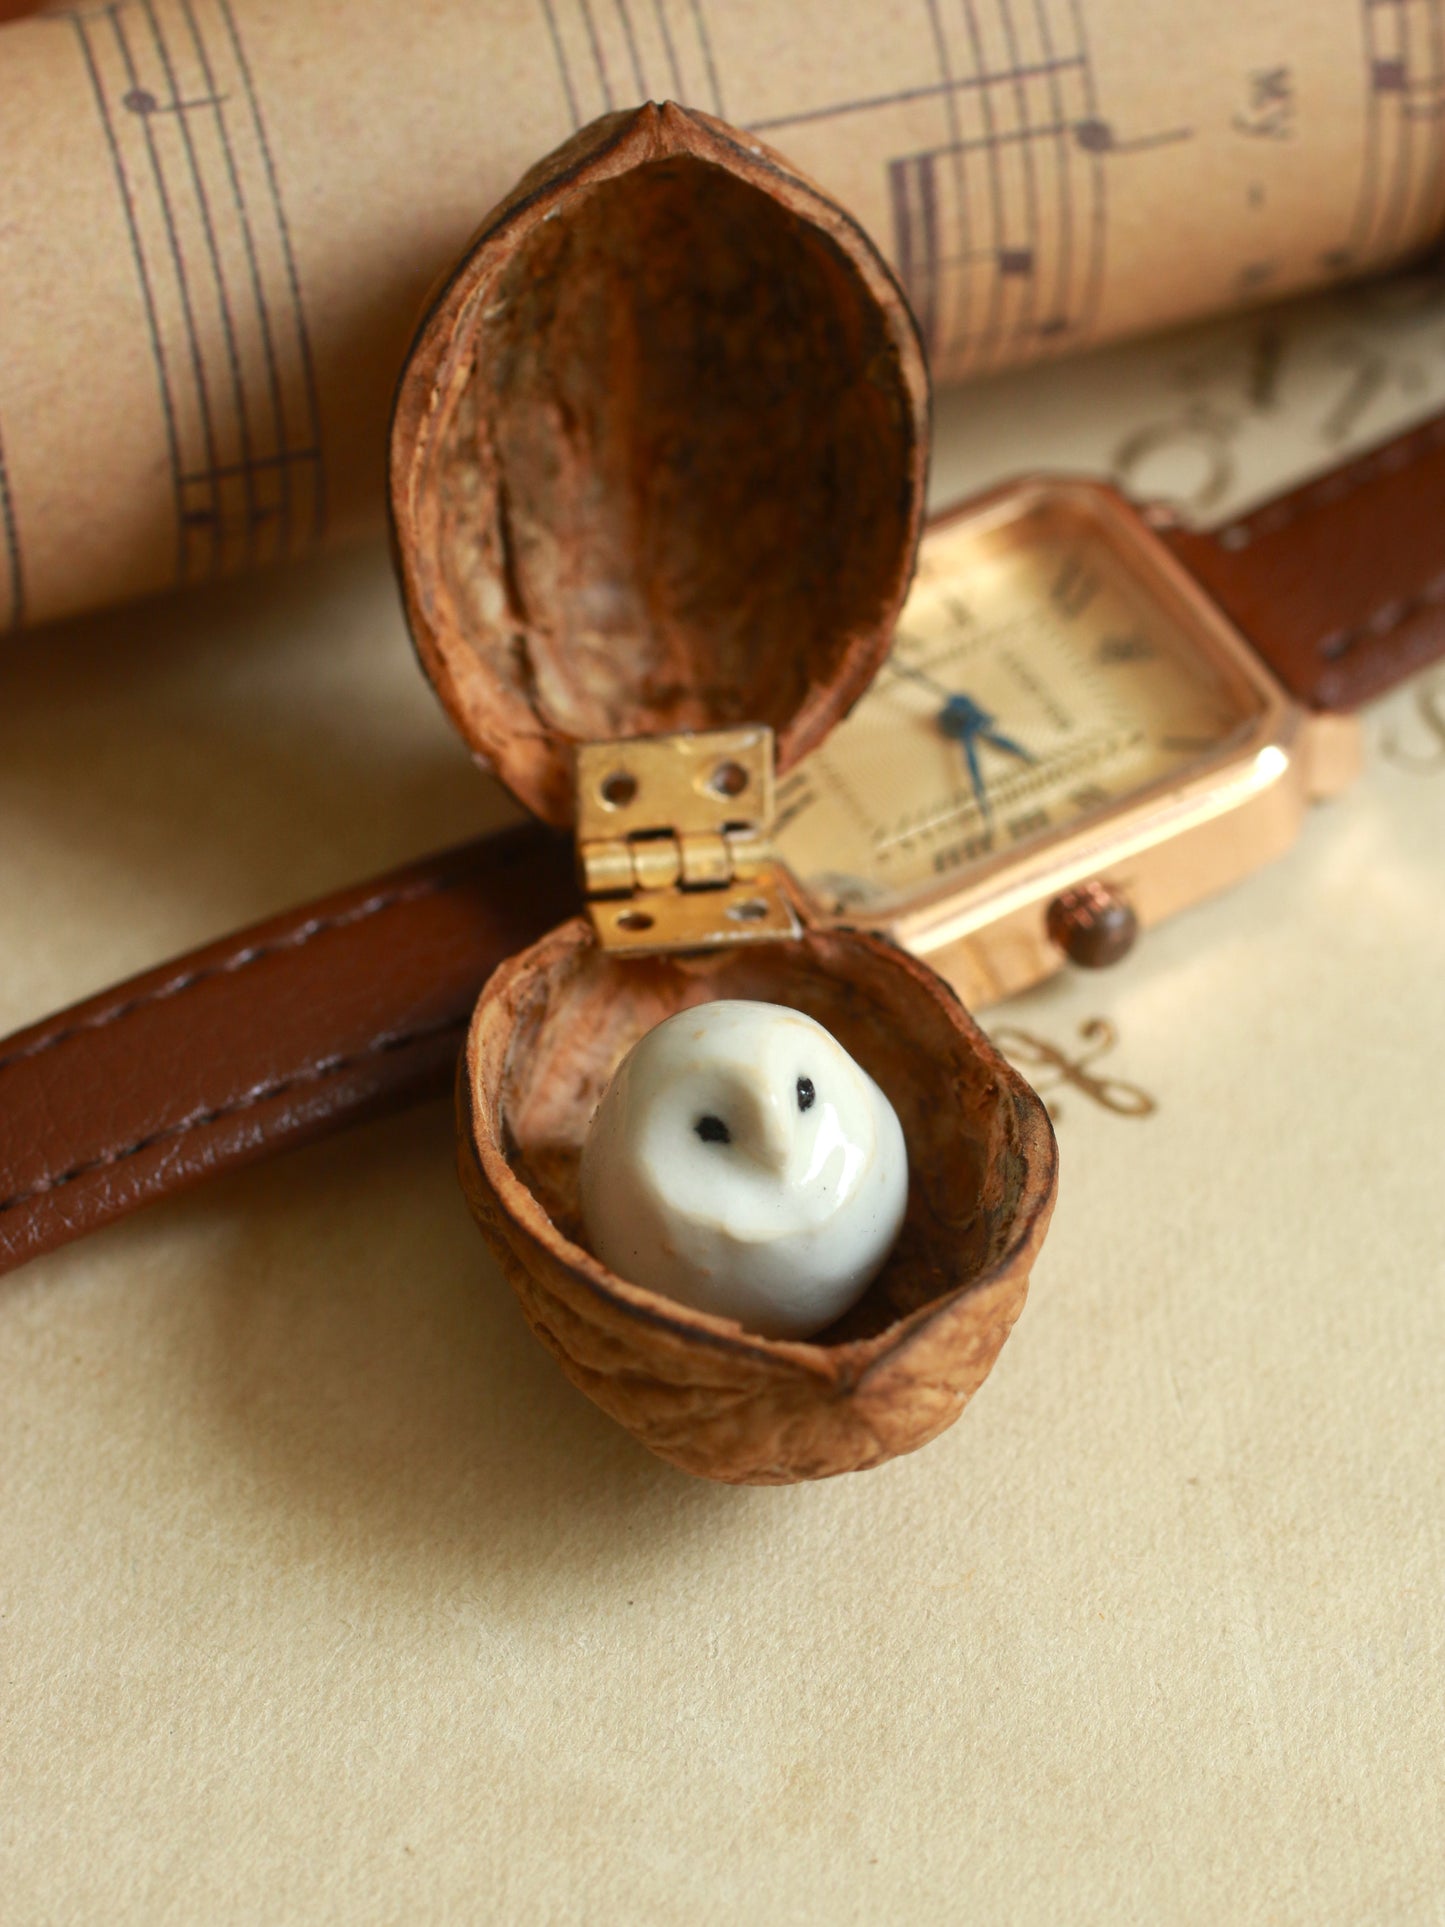 Baby barn owl in a walnut box